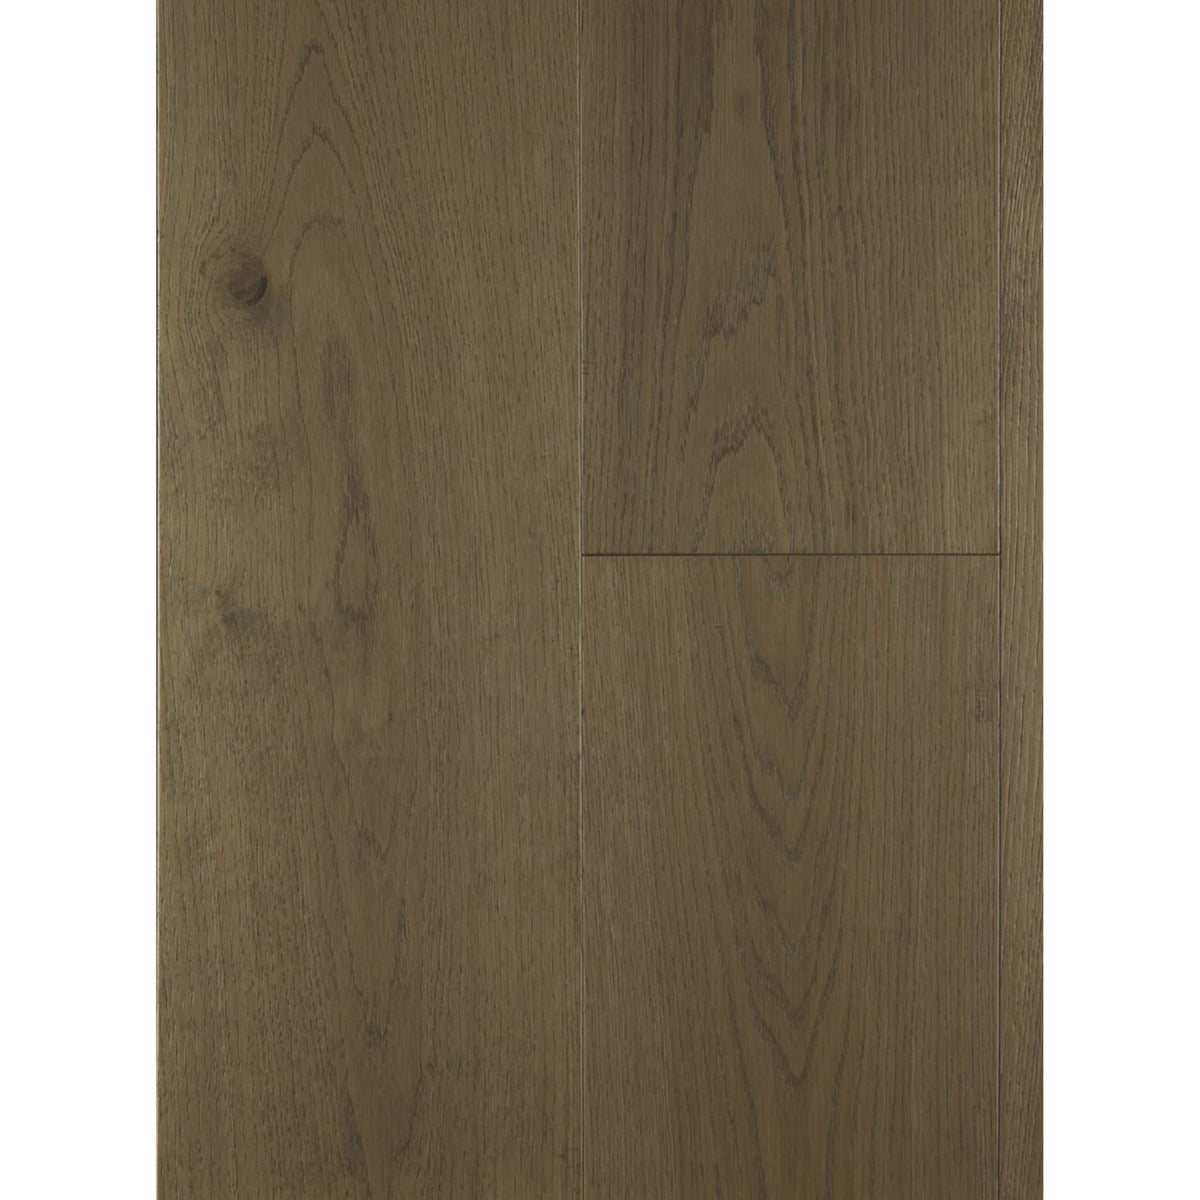 LM Flooring - Big Sky Collection - Aspen Leaf Oak